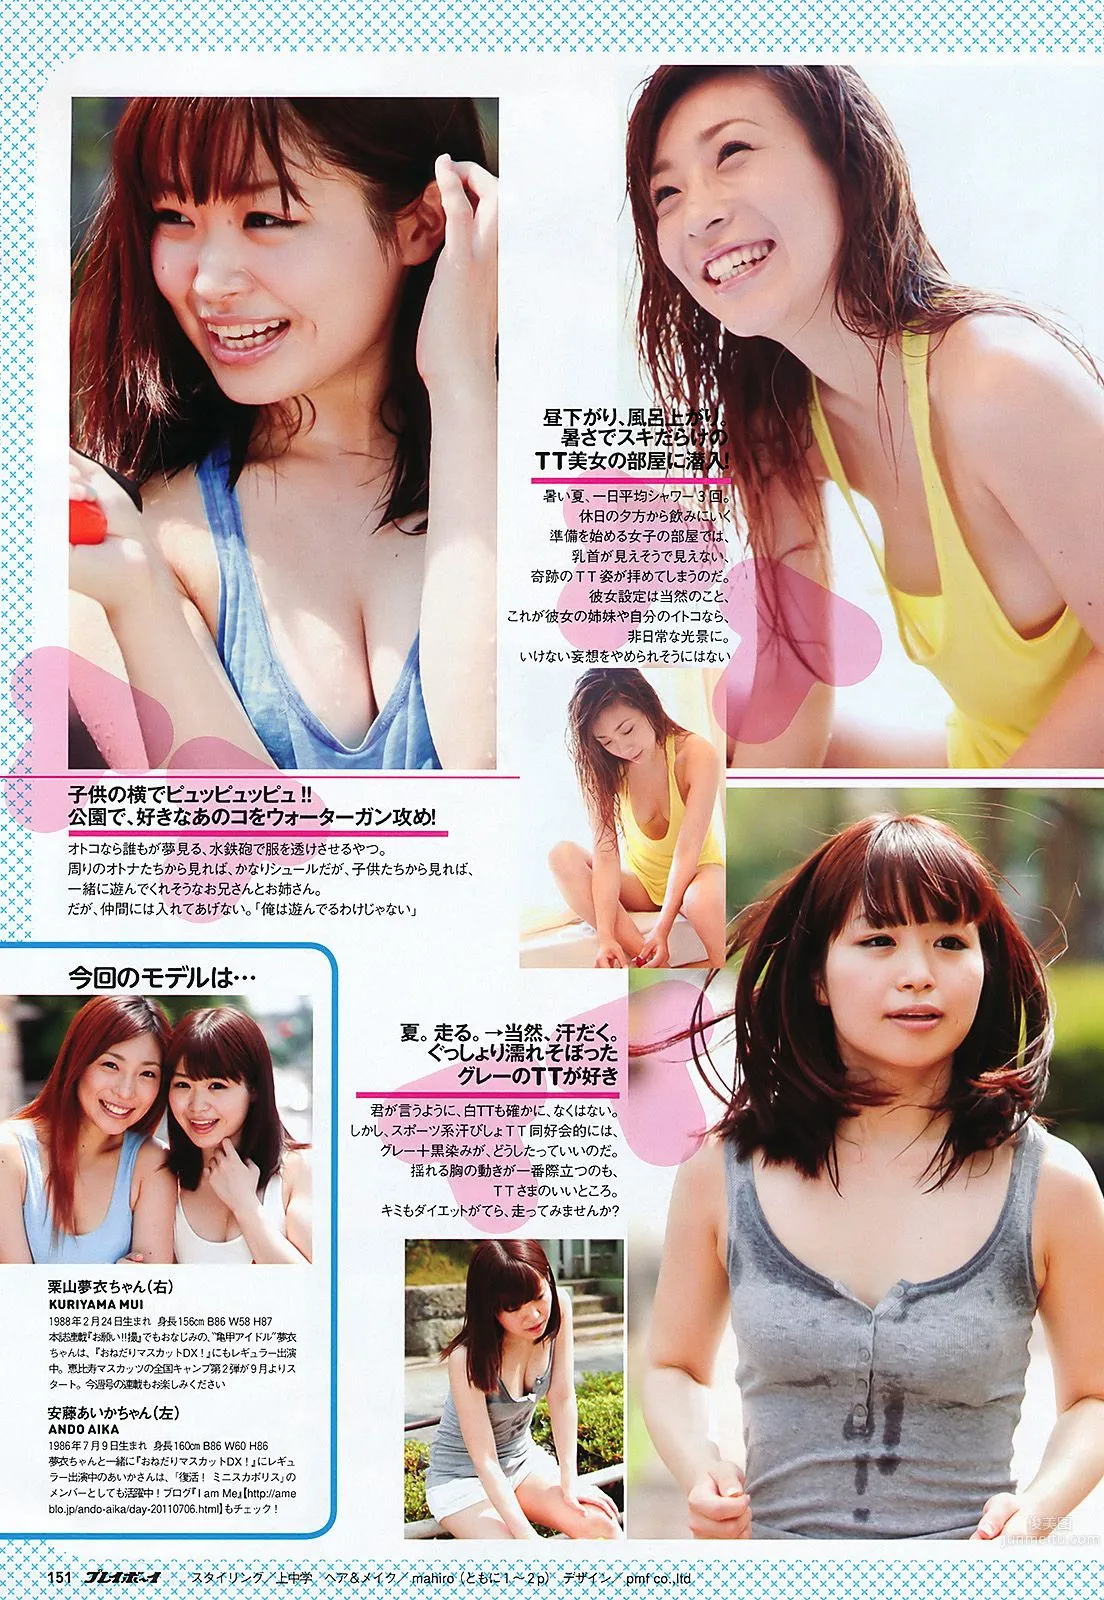 SKE48 峯岸みなみ 奥仲麻琴 森田凉花 熊田曜子 丸高愛実 [Weekly Playboy] 2011年No.32 写真杂志36